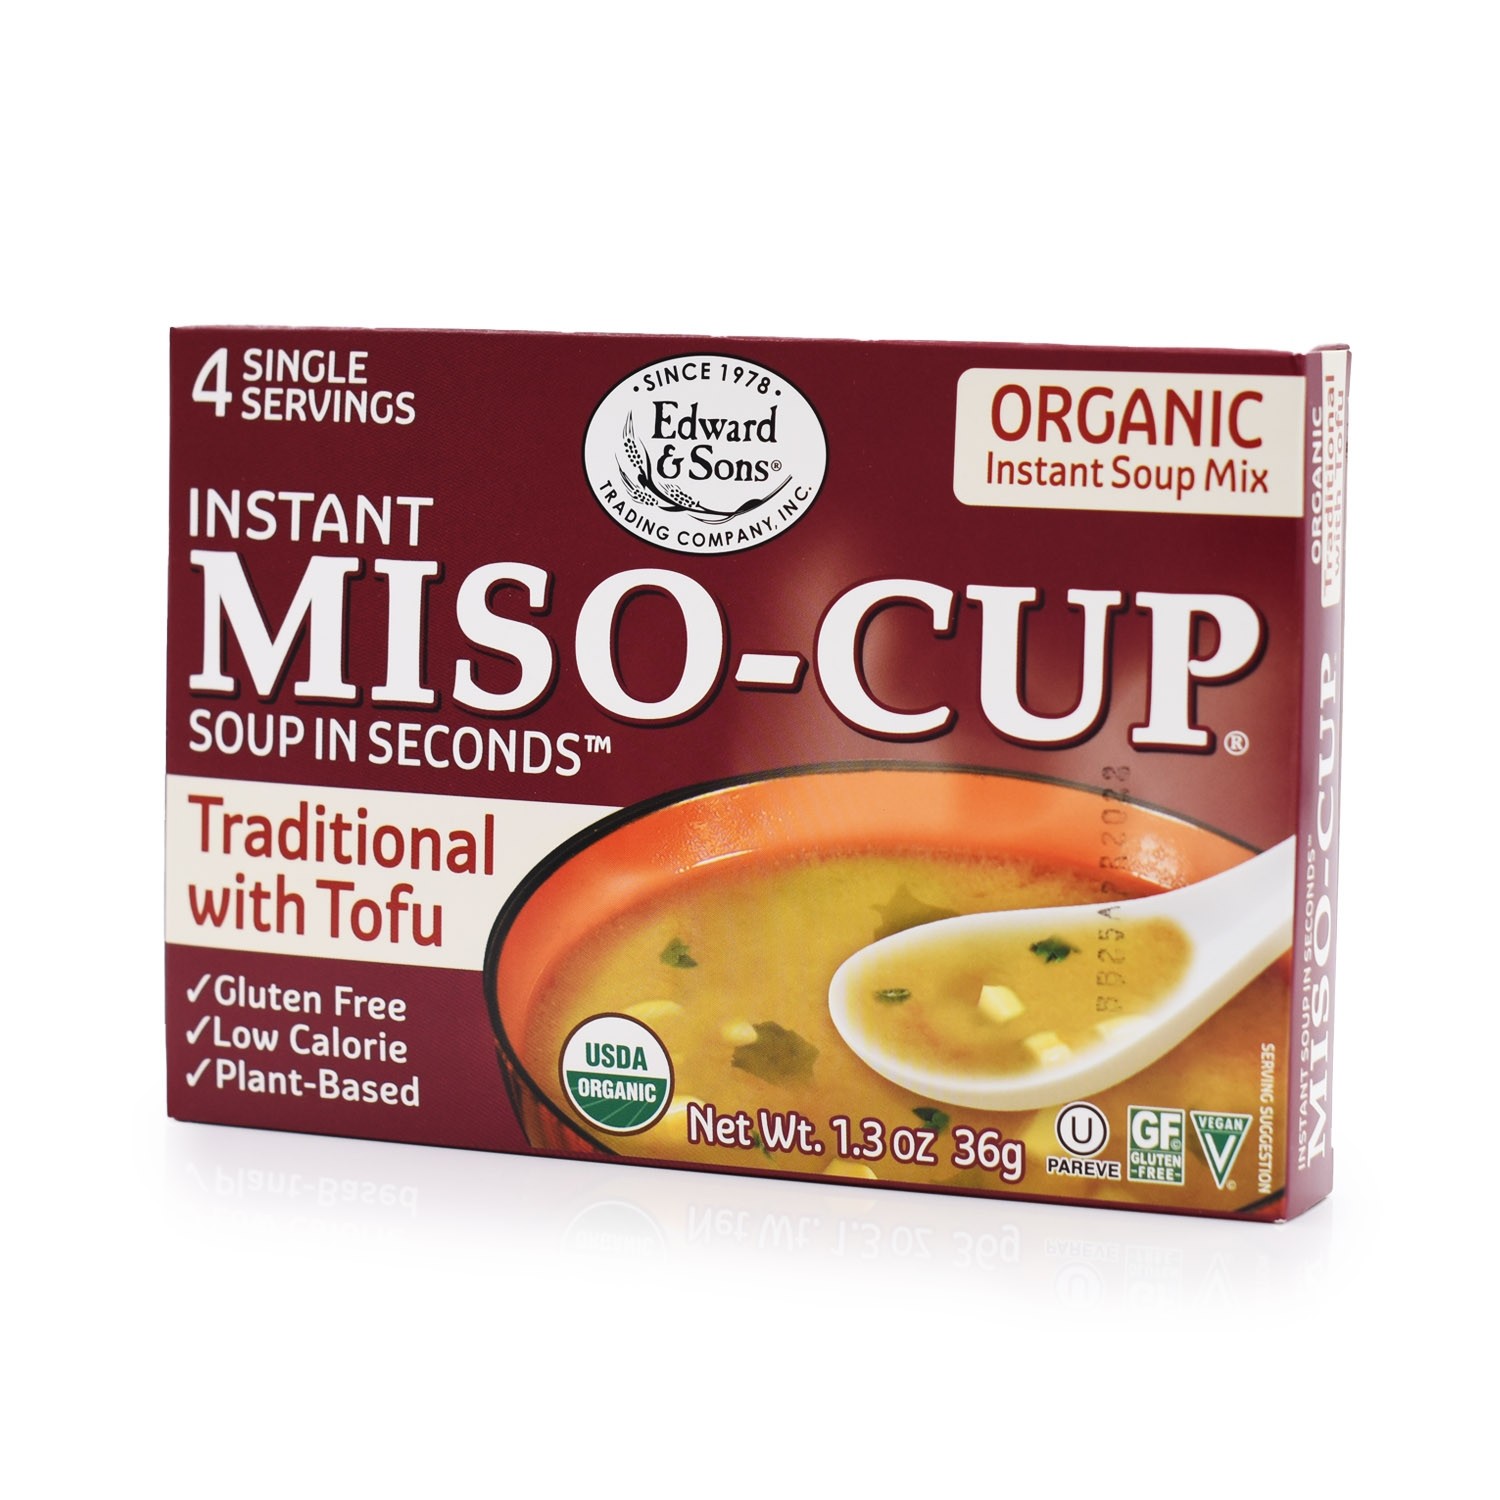 美國有機傳統豆腐味噌湯"EDWARD & SONS" INSTANT ORGANIC TRADITIONAL WITH TOFU MISO-CUP